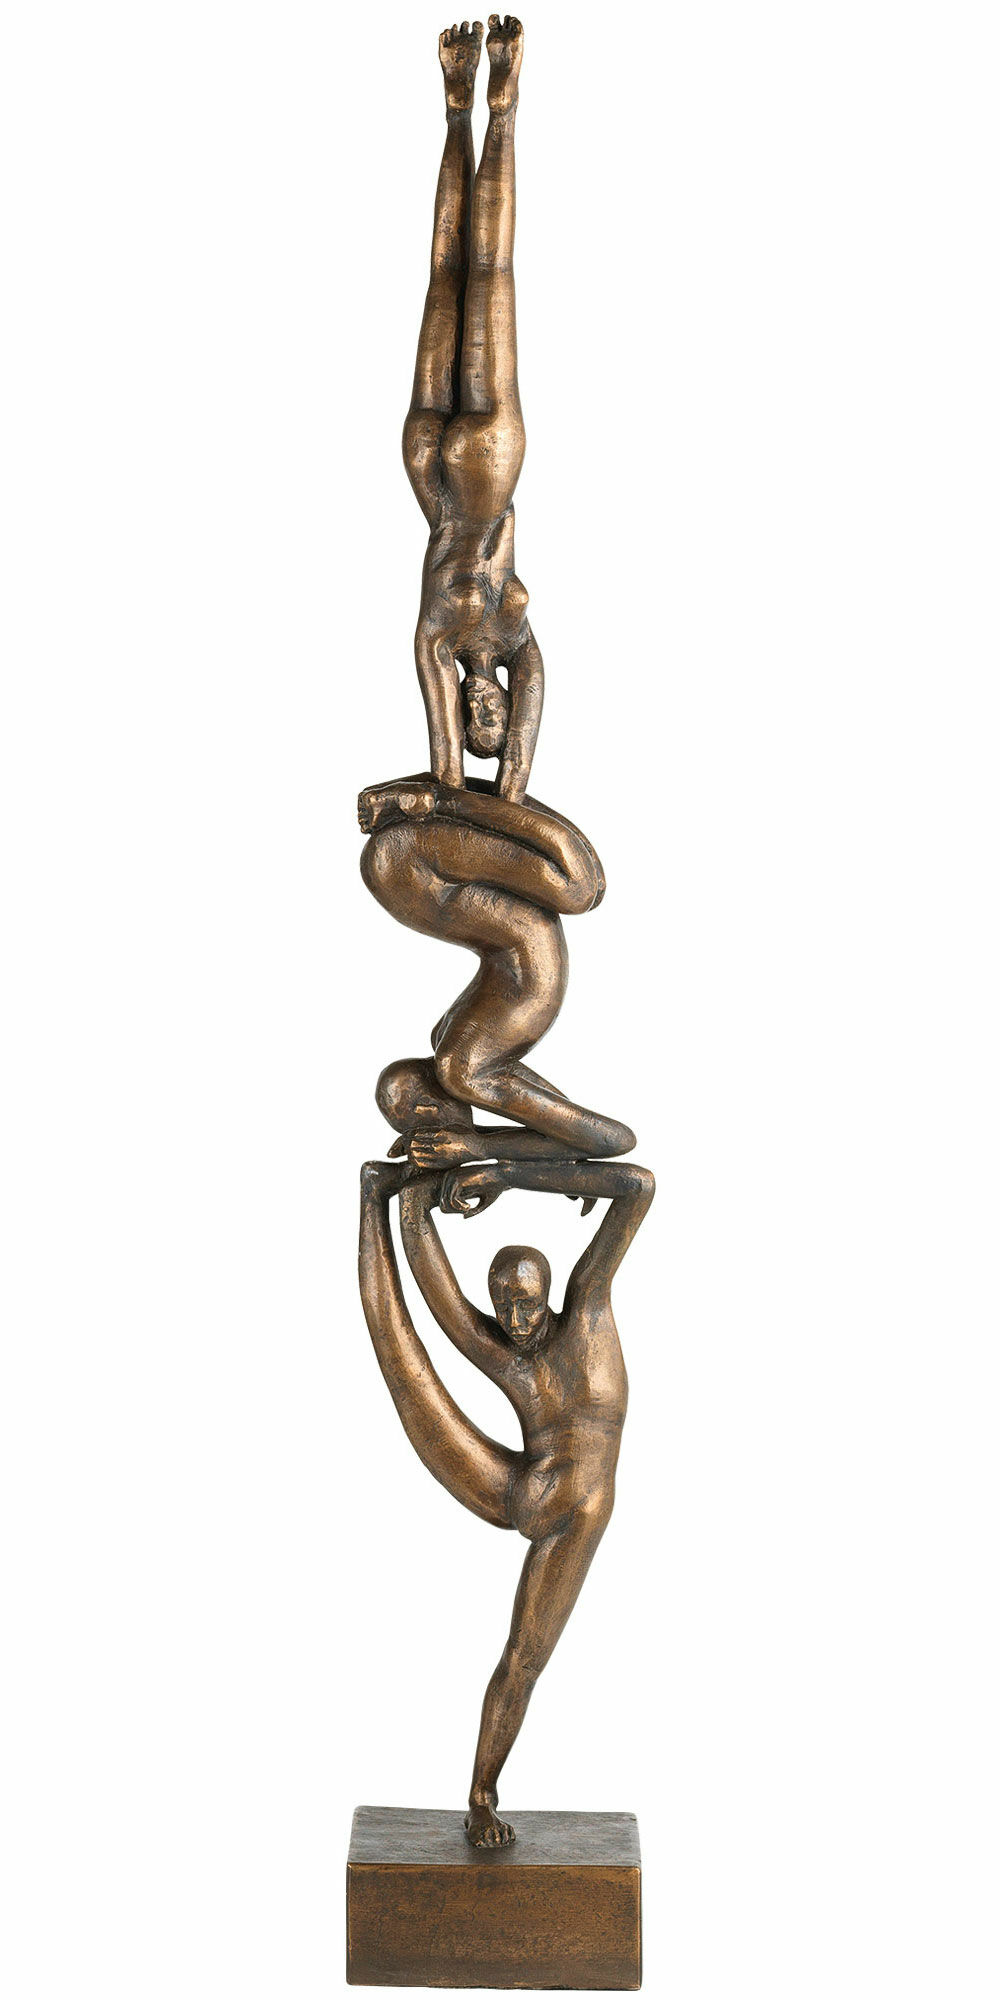 Sculpture "Balance", bronze by Antje Lindner